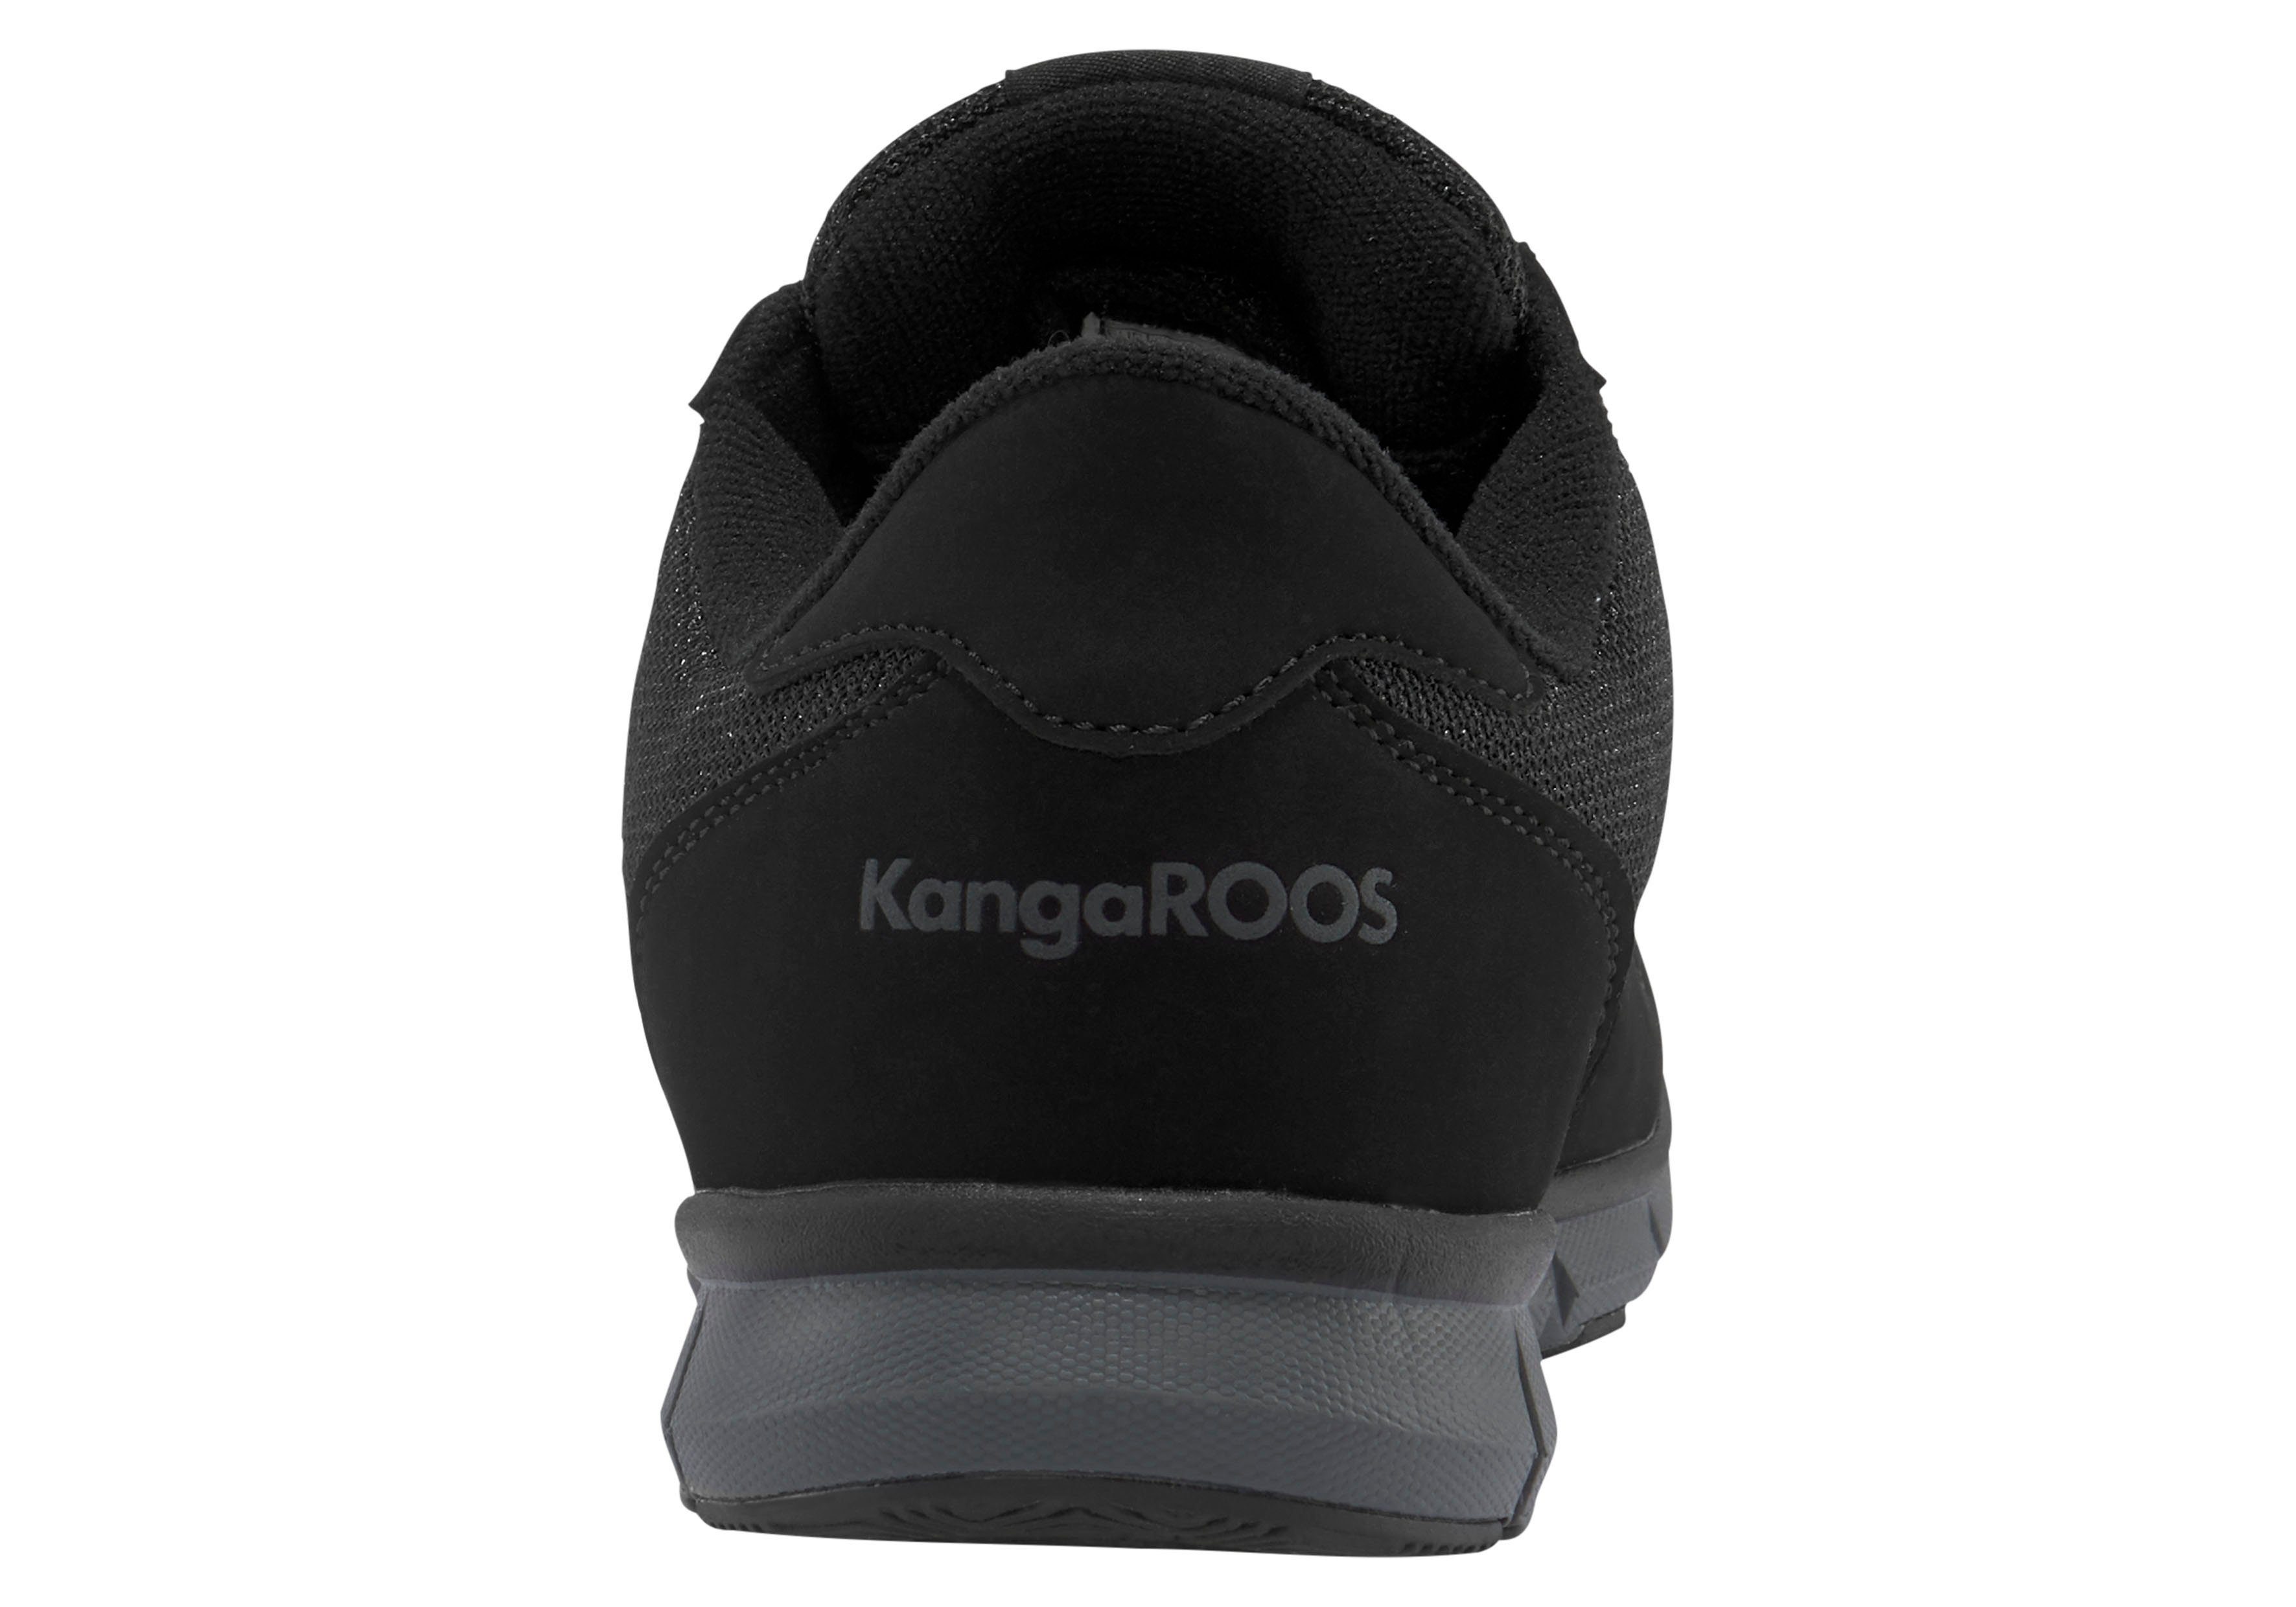 KangaROOS Damen/Herren Schuhe K-BlueRun 701 B schwarz Nylon NEU 